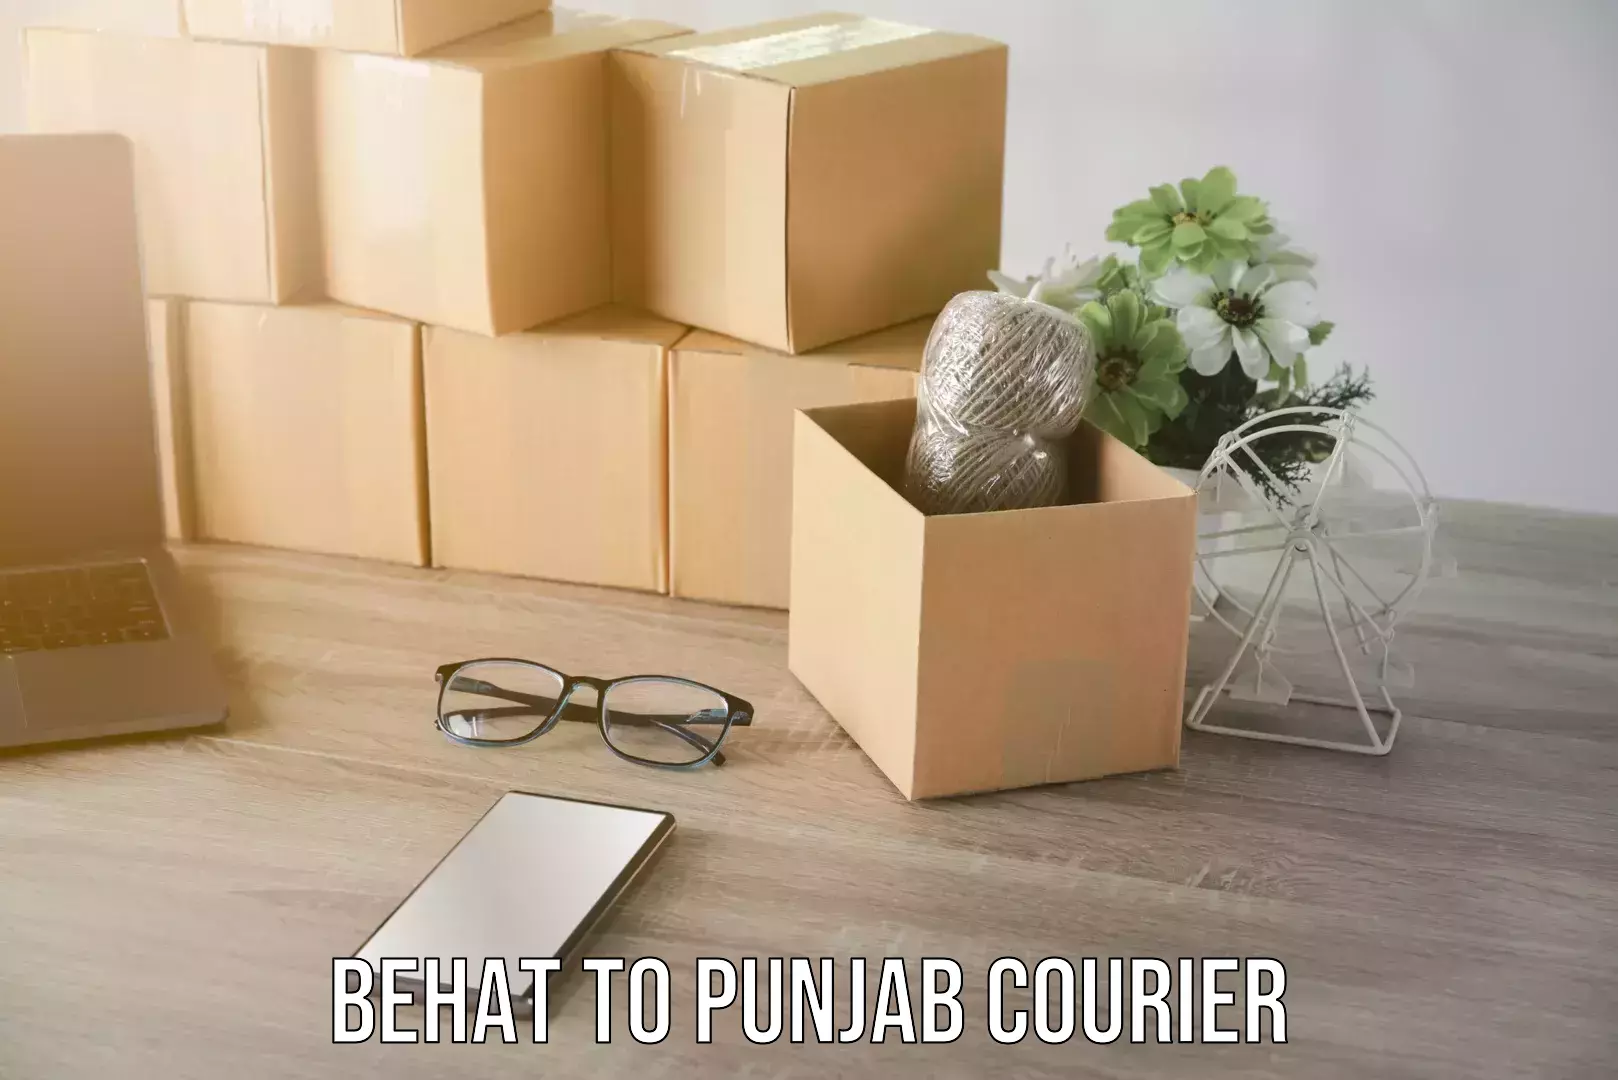 Efficient parcel service Behat to Punjab